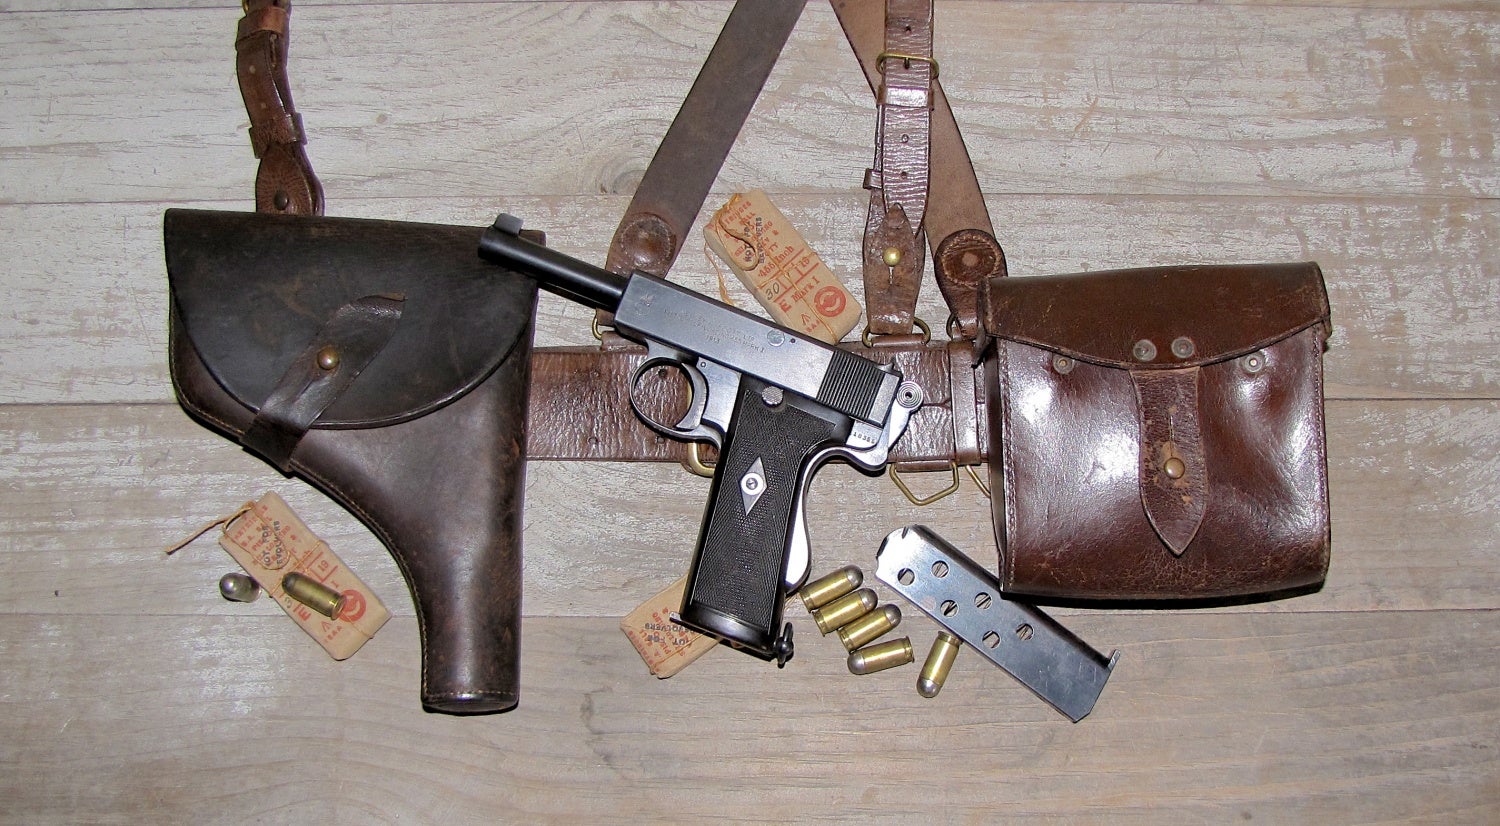 POTD: Webley & Scott Self-Loading Pistol MkI - The Firearm BlogThe Firearm Blog1500 x 826